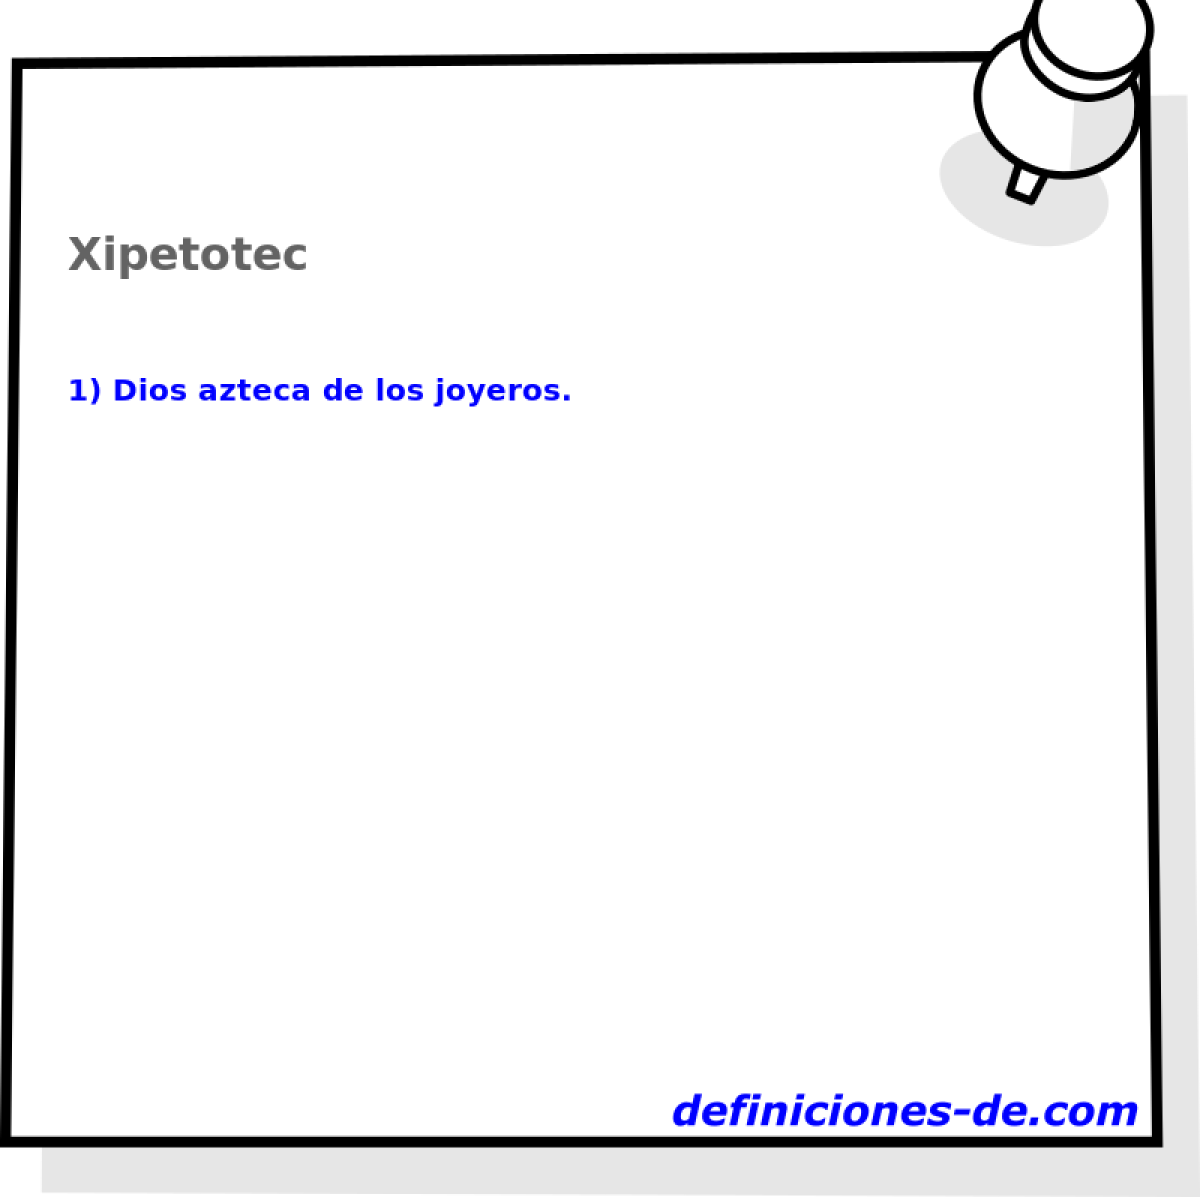 Xipetotec 